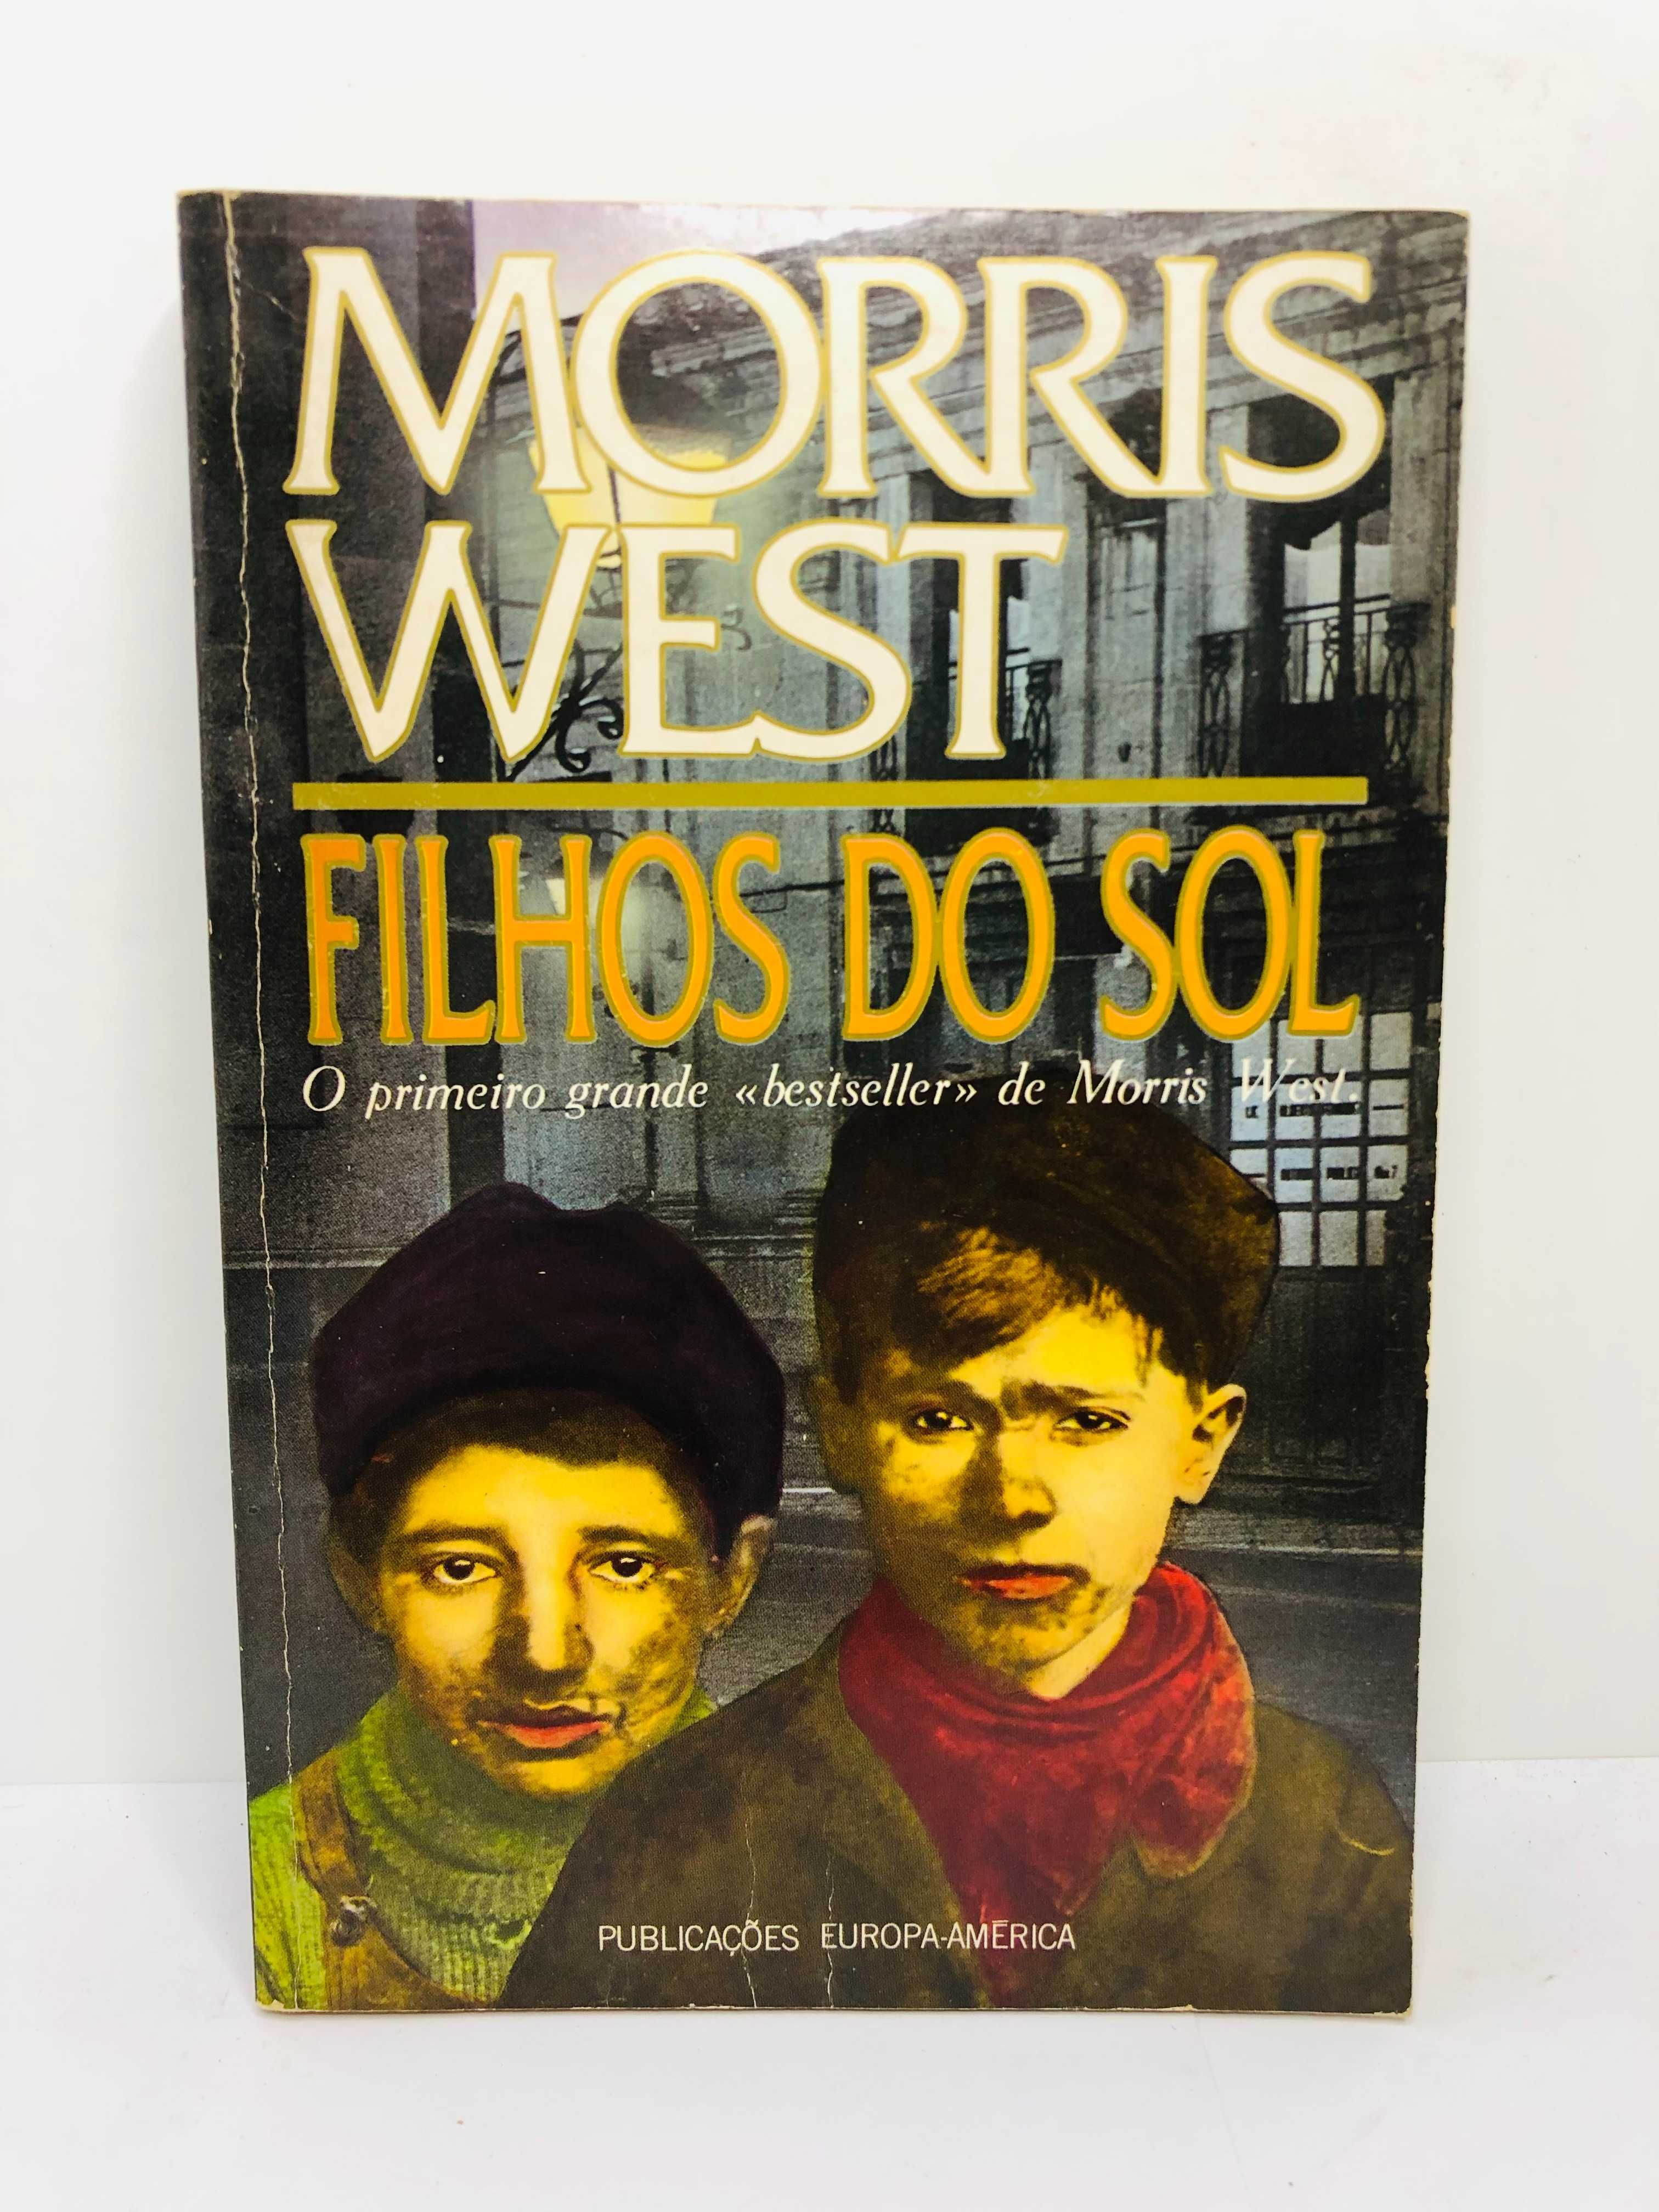 Filhos do Sol - Morris West